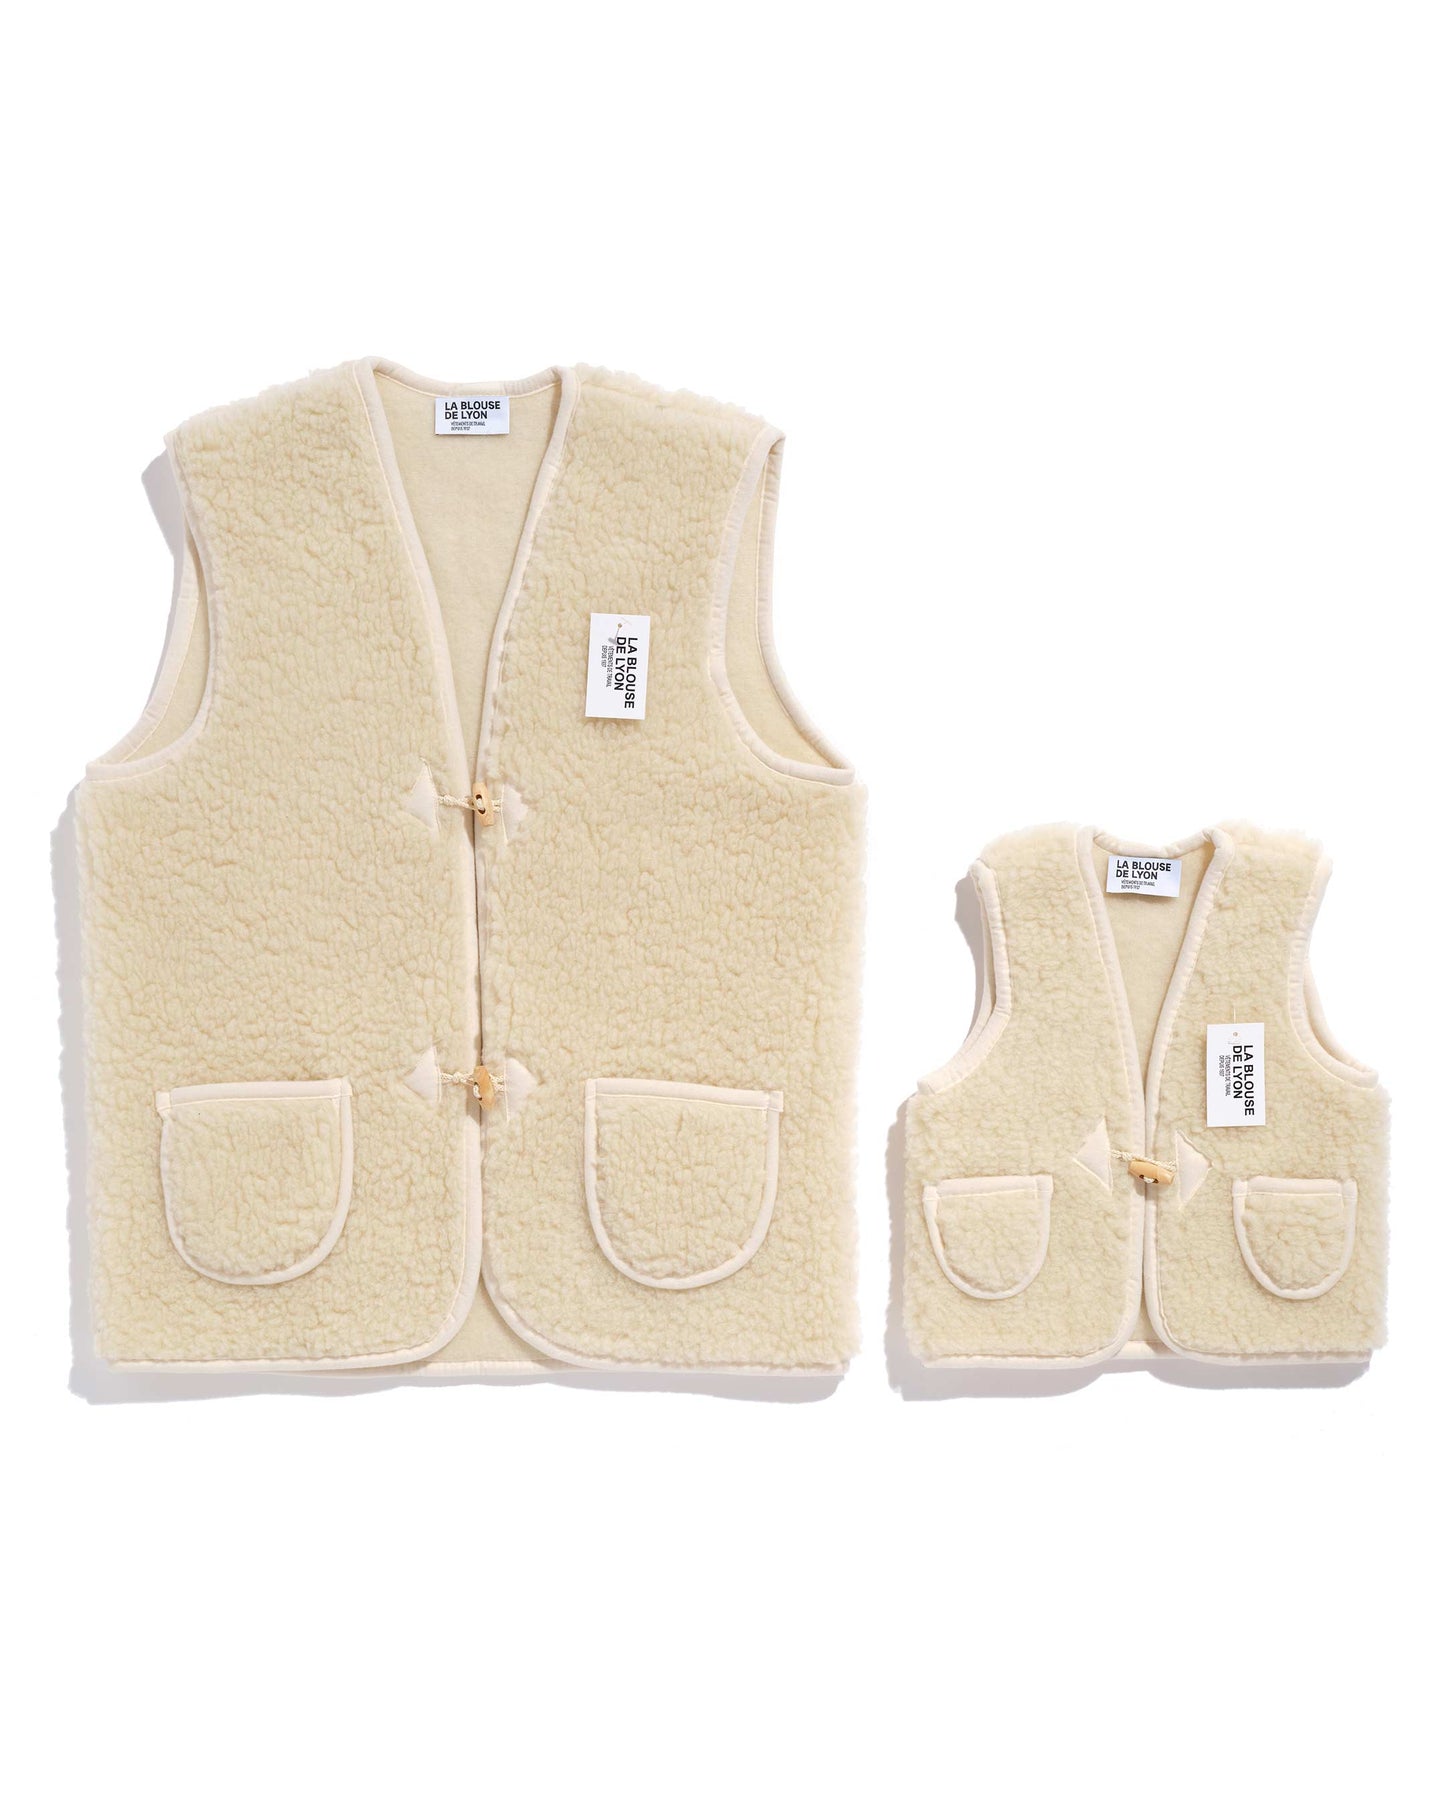 New adult vest in 100% Woolmark sheep wool